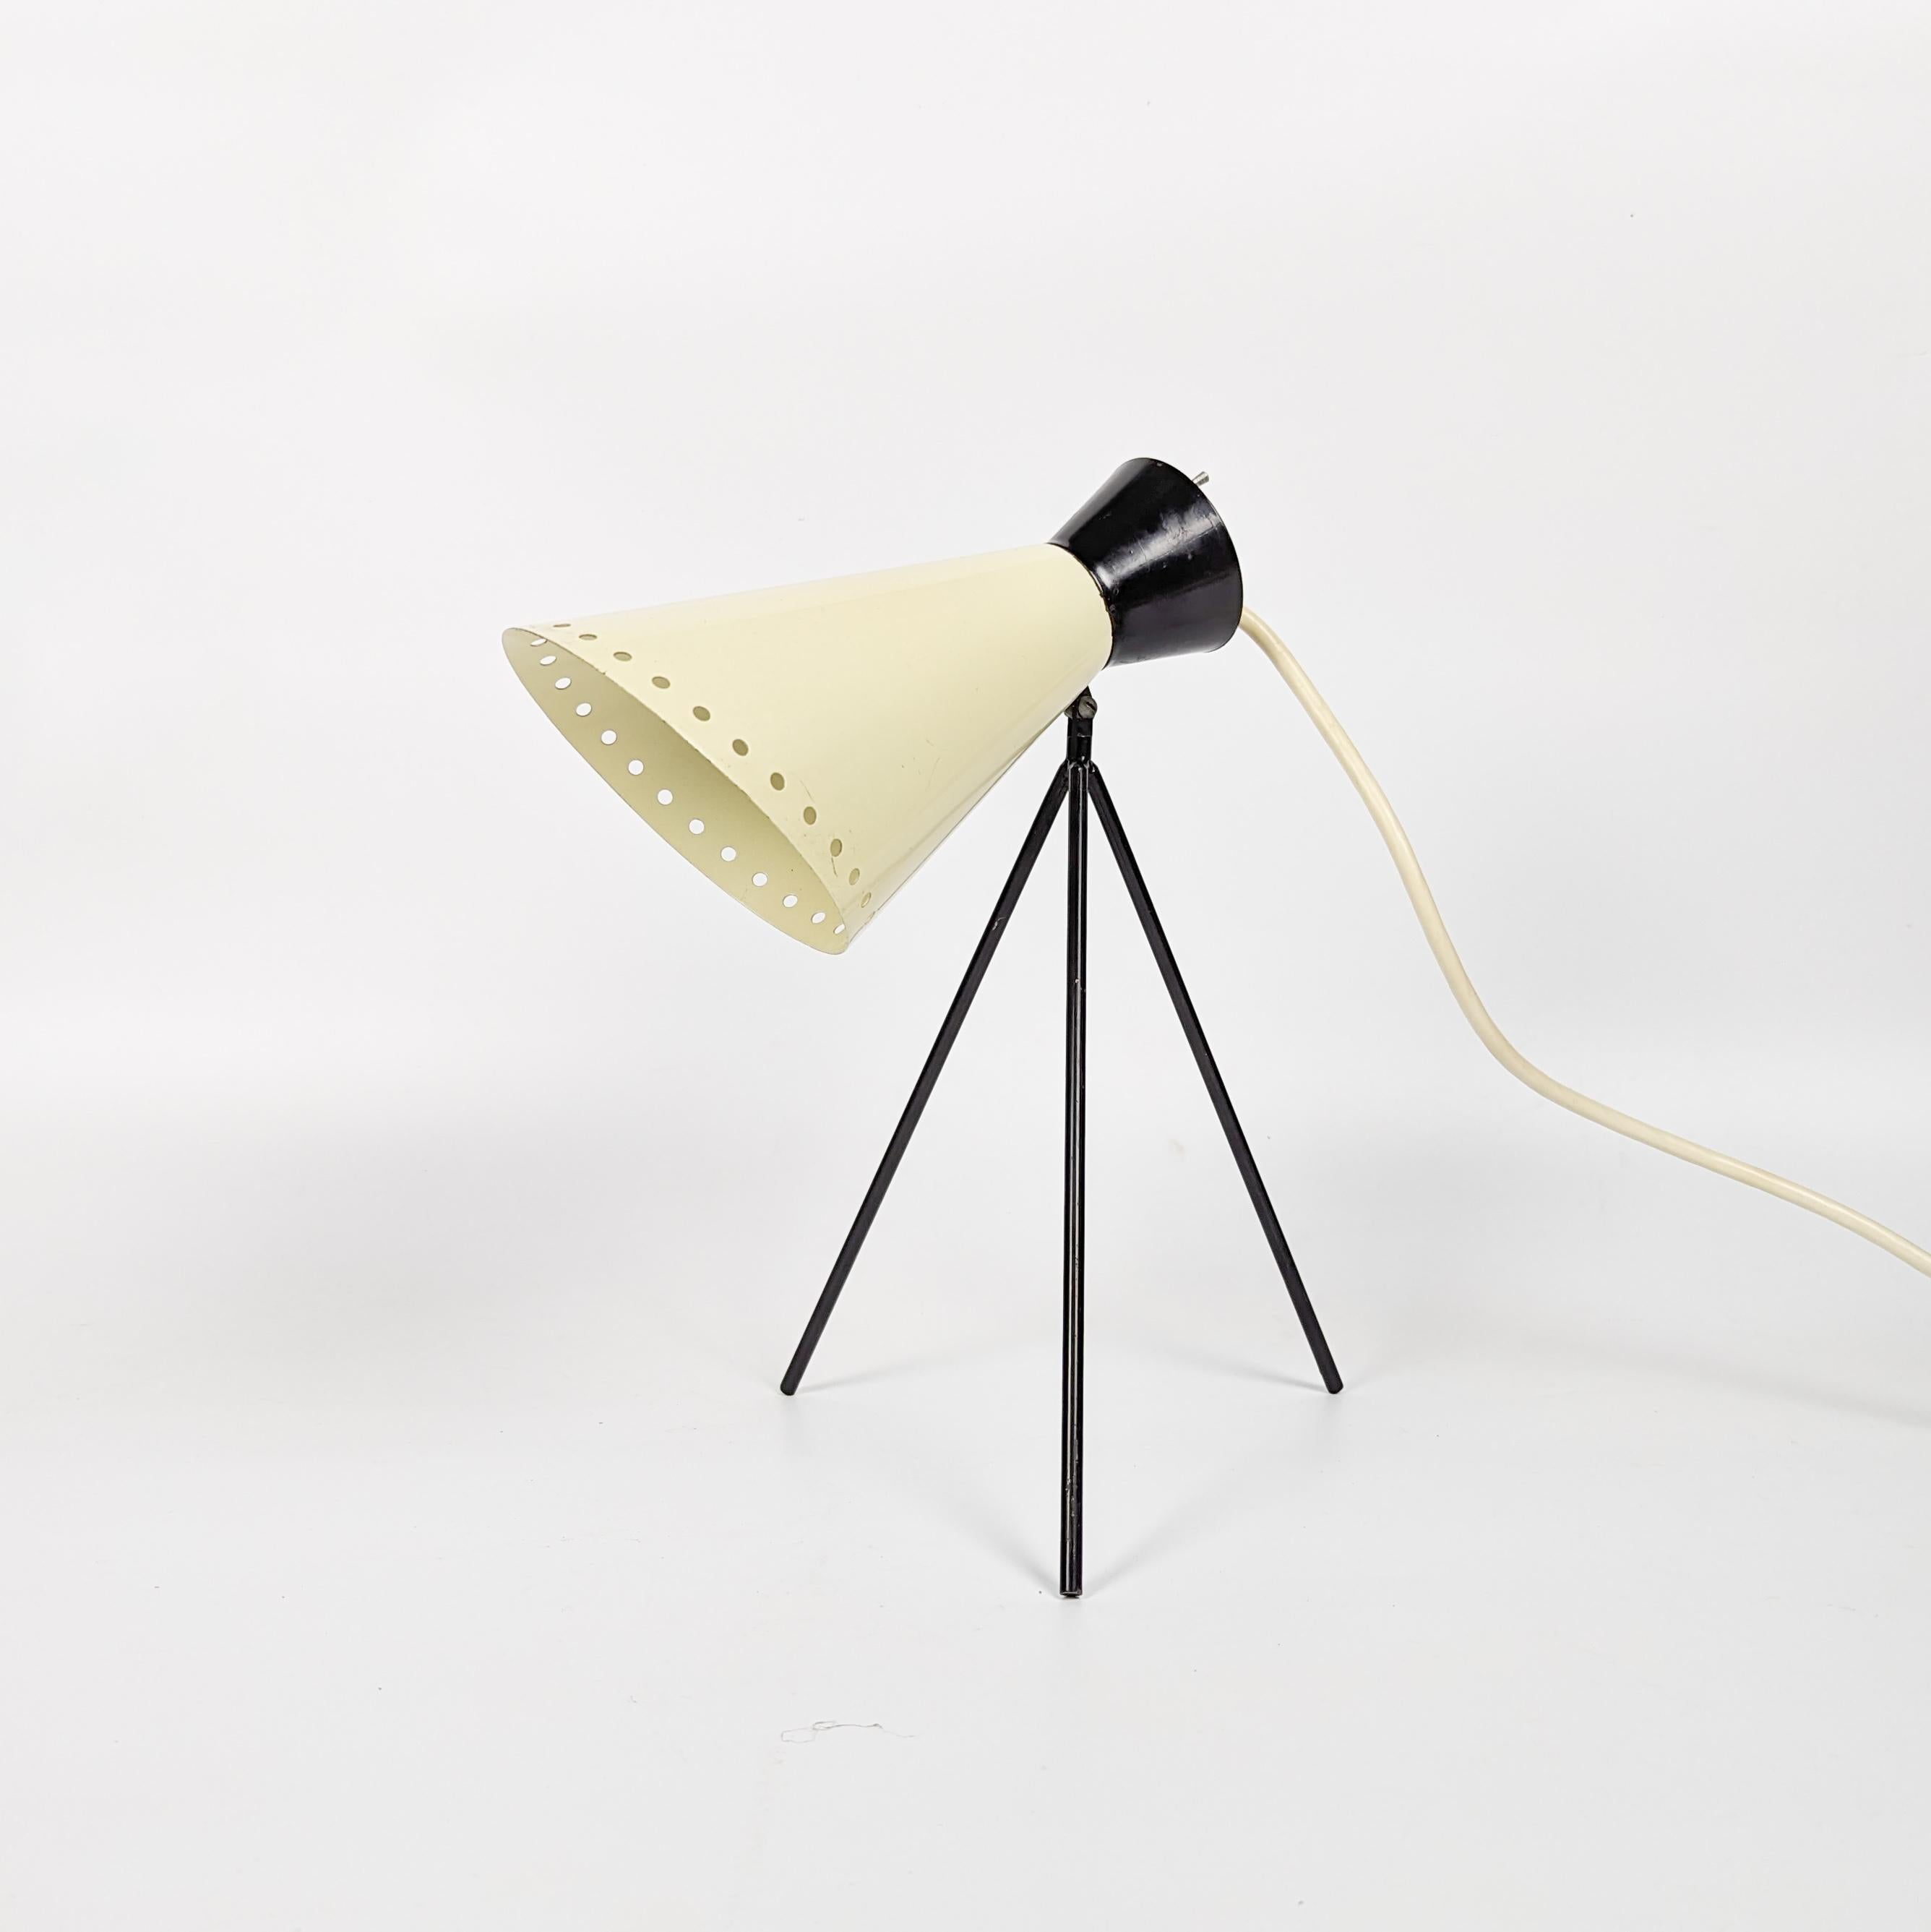 Fantastique lampe de table tripode moderne du milieu du siècle, conçue par Josef Hurka, présentant un magnifique design des années 1950 dans le schéma classique des couleurs beige et noir. Fabriquée par Napako en République tchèque, cette lampe est